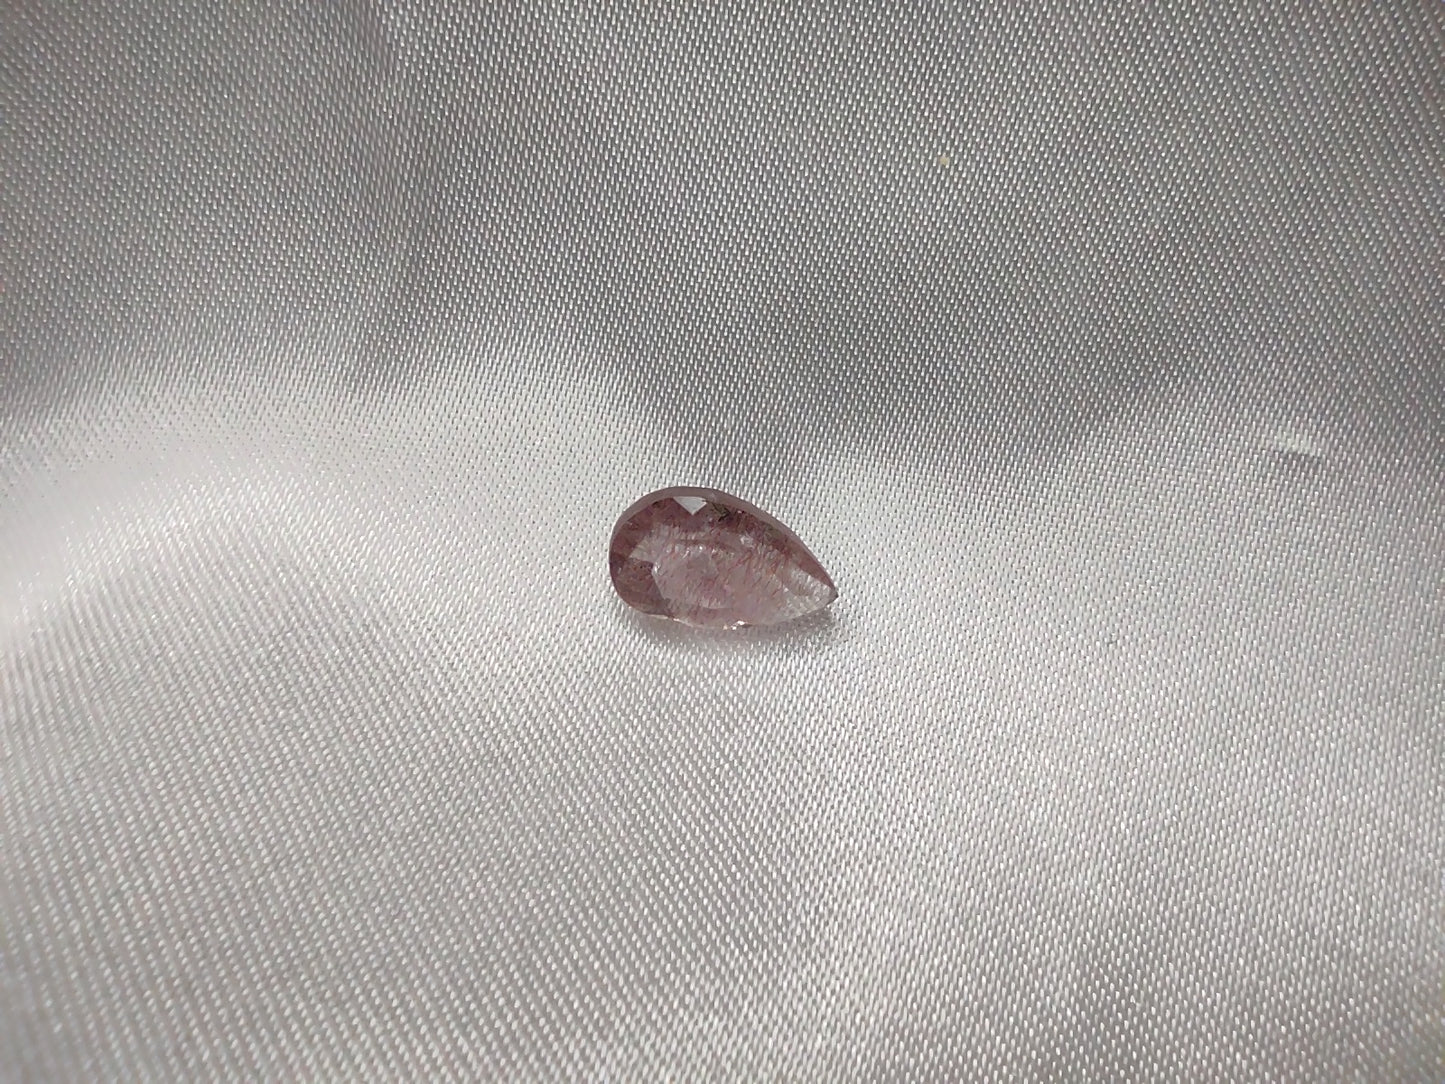 A tear drop cut super seven quartz.